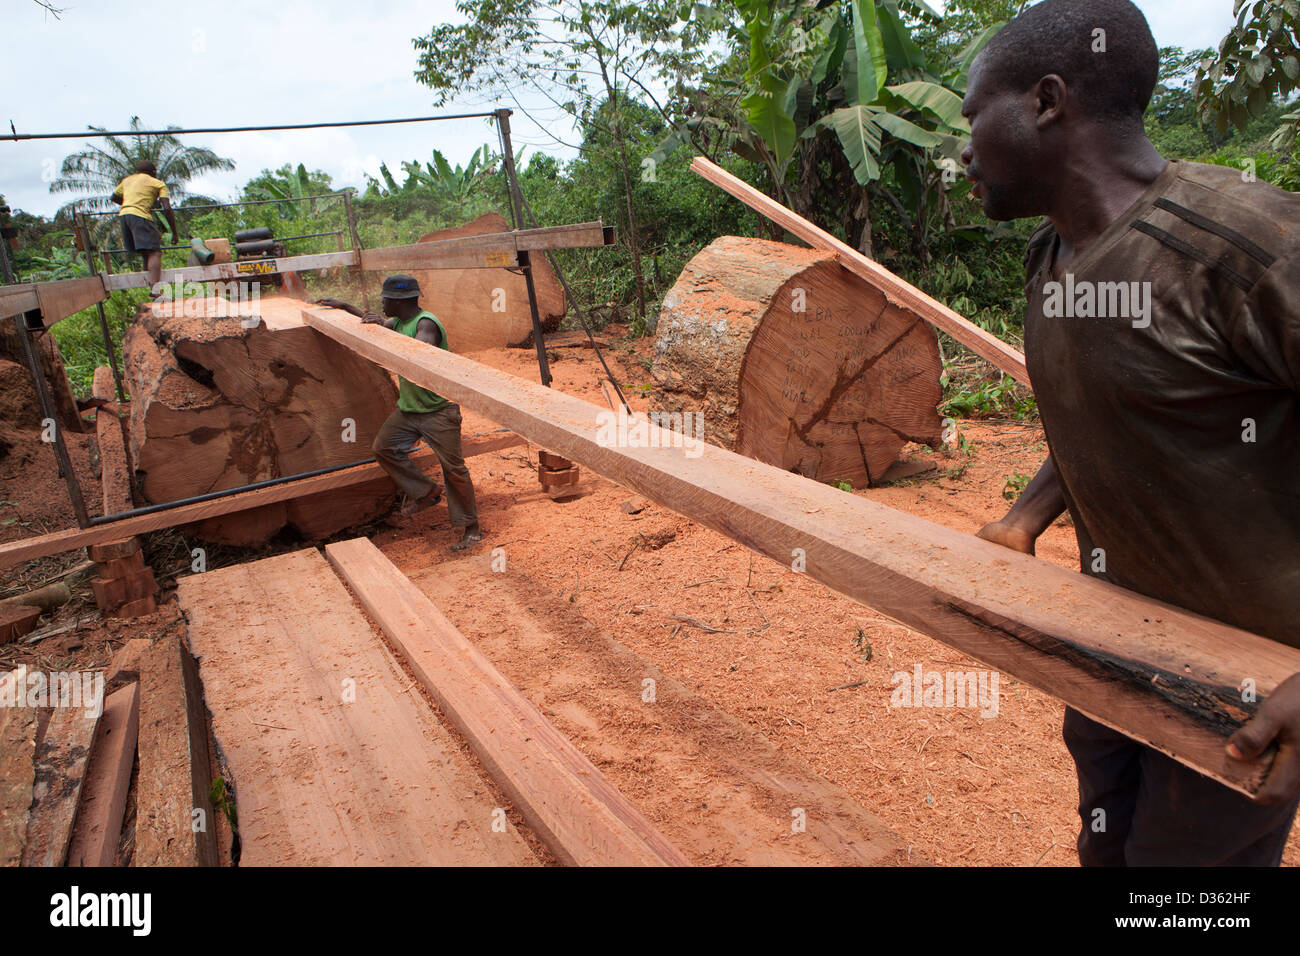 Camerún, 2 de octubre de 2012: una tripulación de registro móvil de madera cortada de un gran árbol de madera dura. Foto de stock